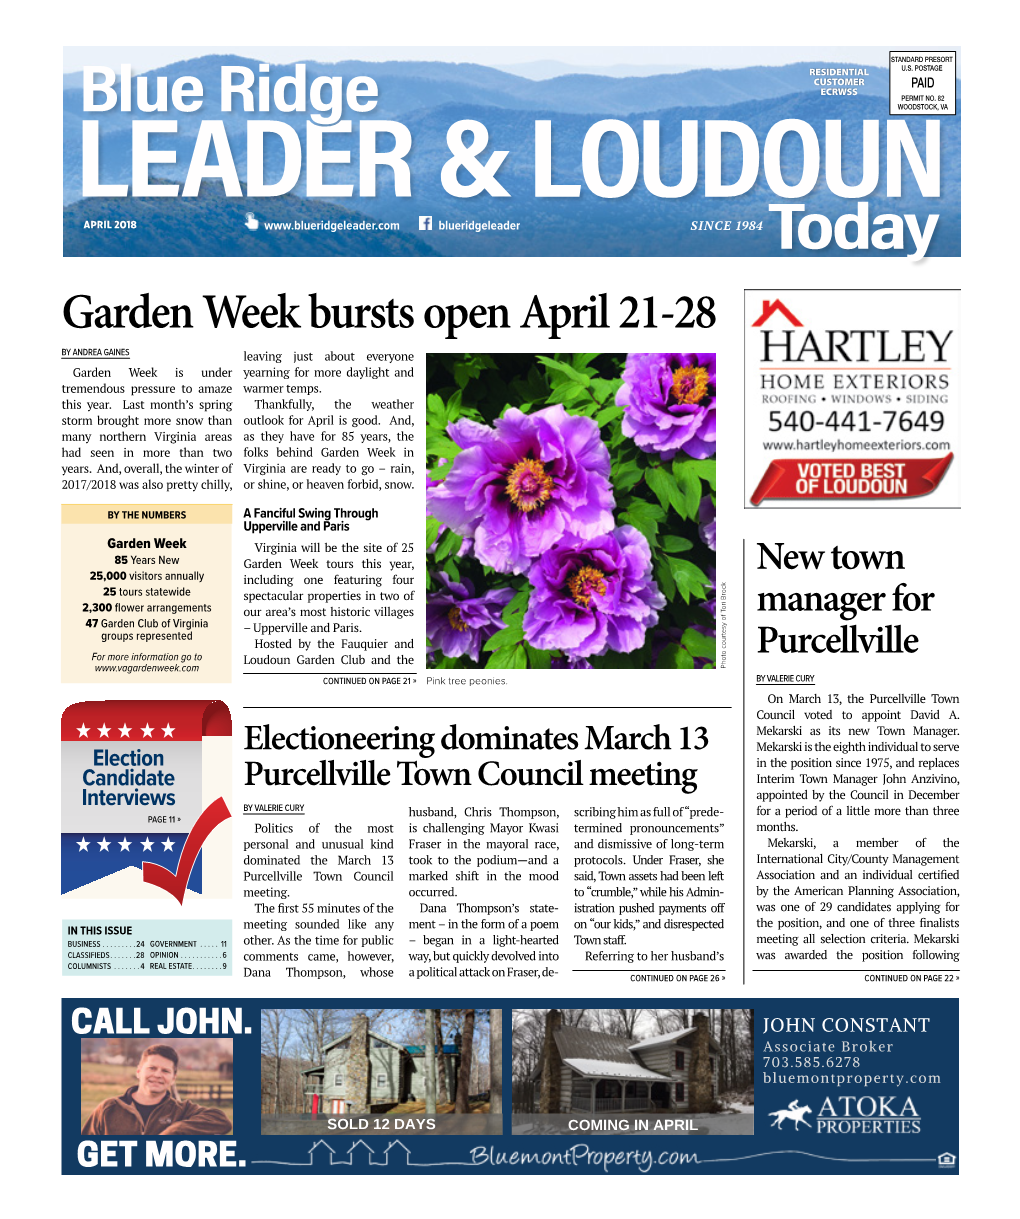 Garden Week Bursts Open April 21-28